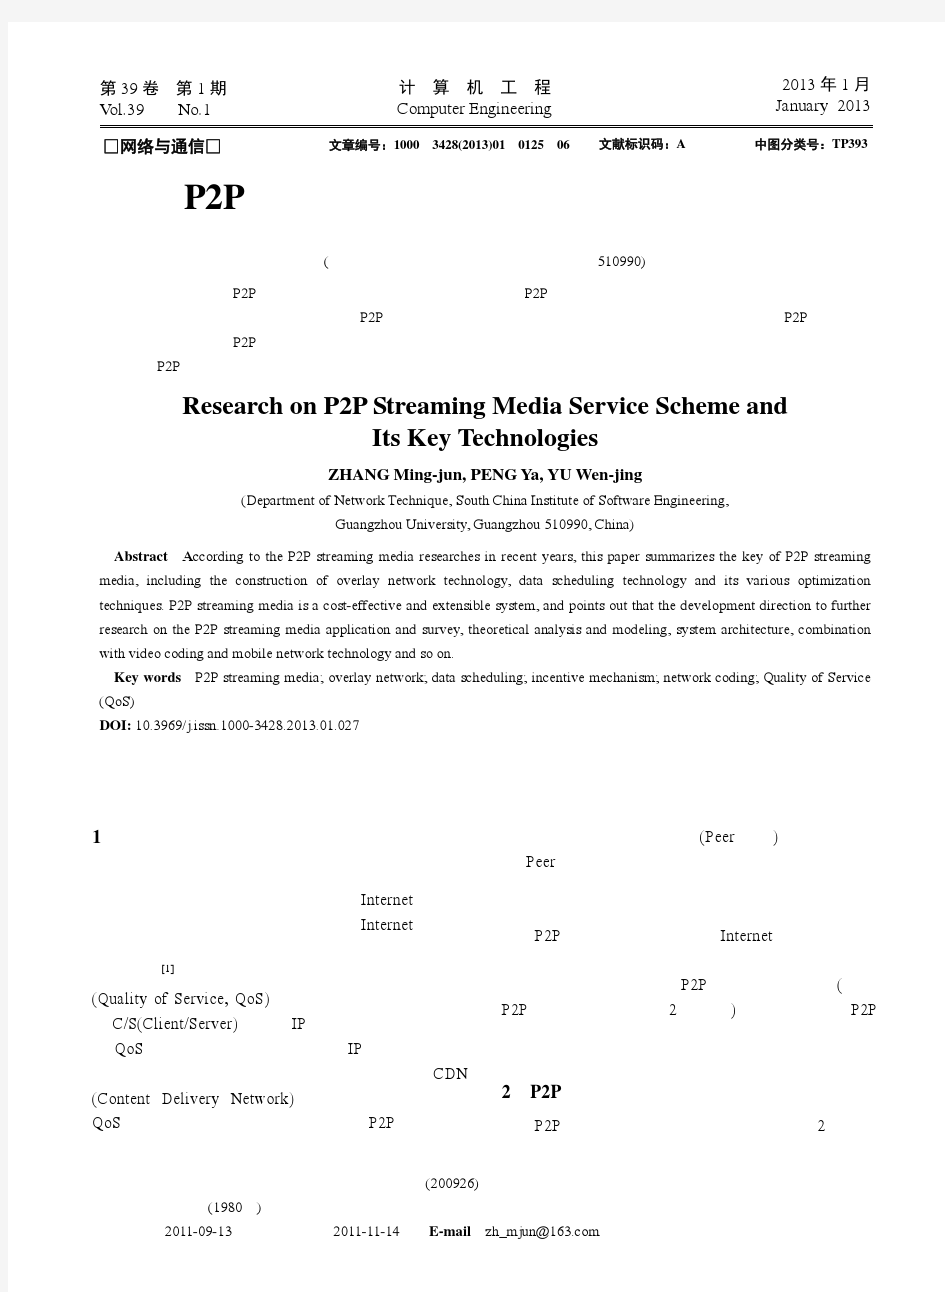 P2P流媒体服务方案及其关键技术研究